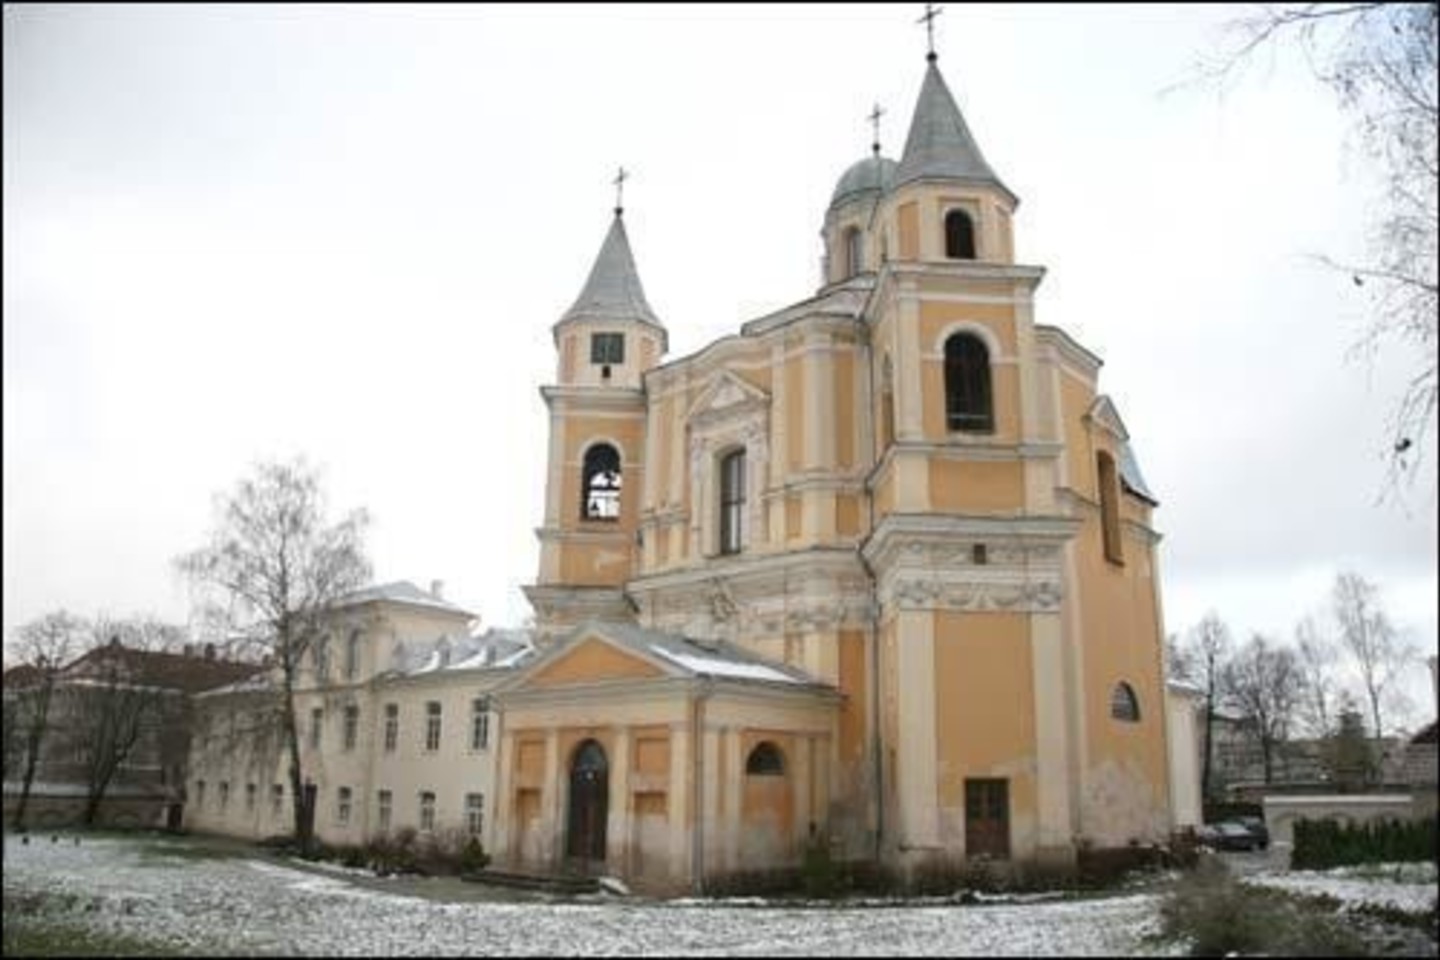  Trinitorių bažnyčios ir vienuolyno Antakalnyje darbams vadovavo tičinietis G.P.Pertis.<br> Wikimapia nuotr.